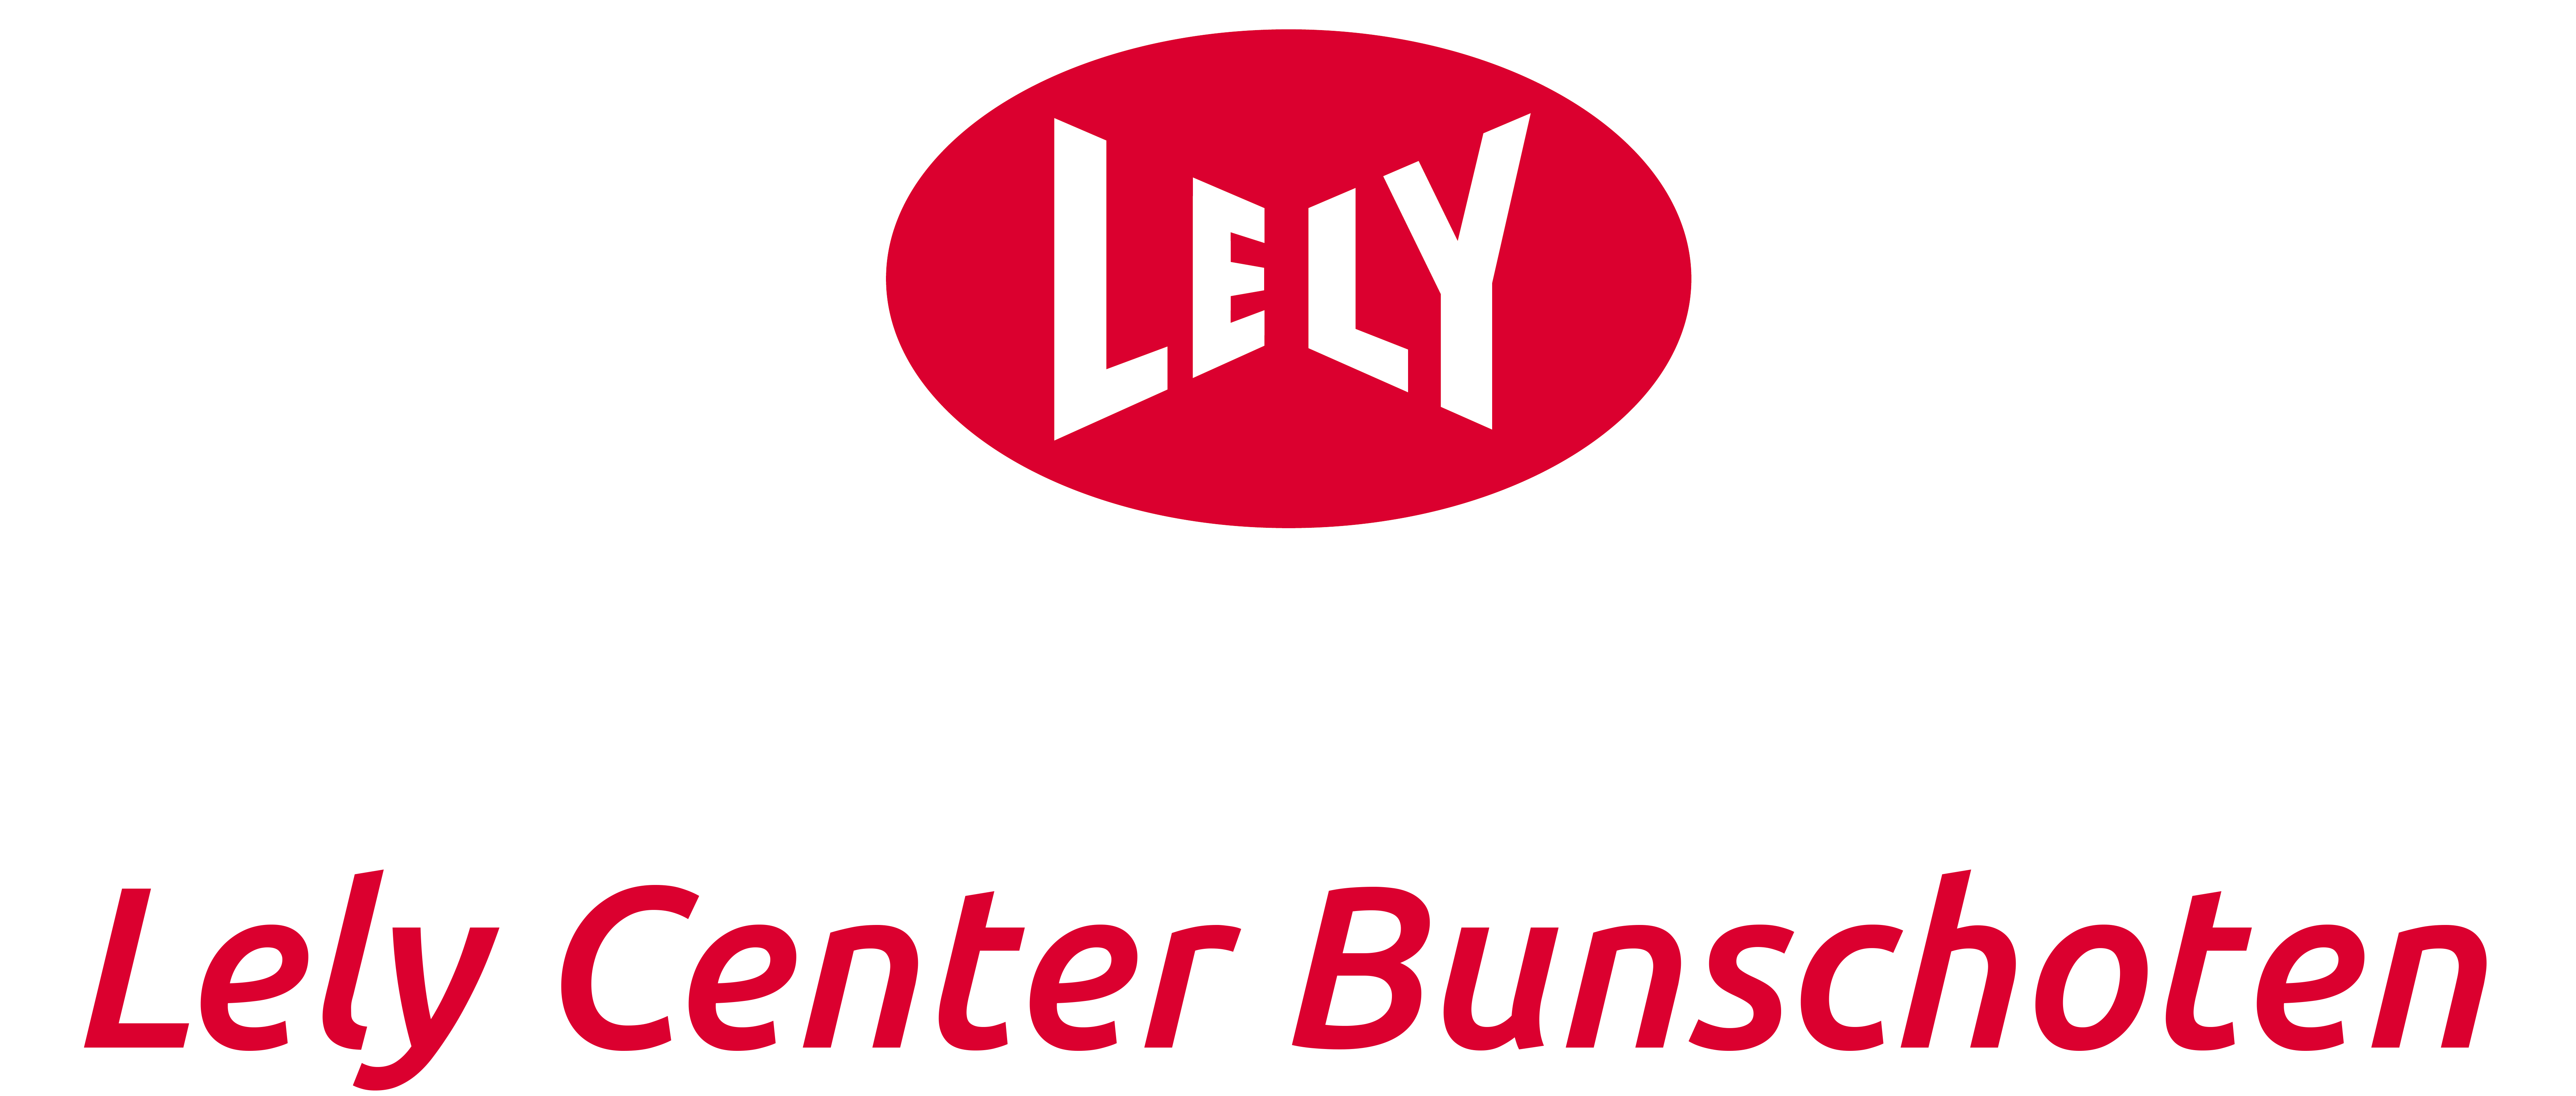 Lely Bunschoten